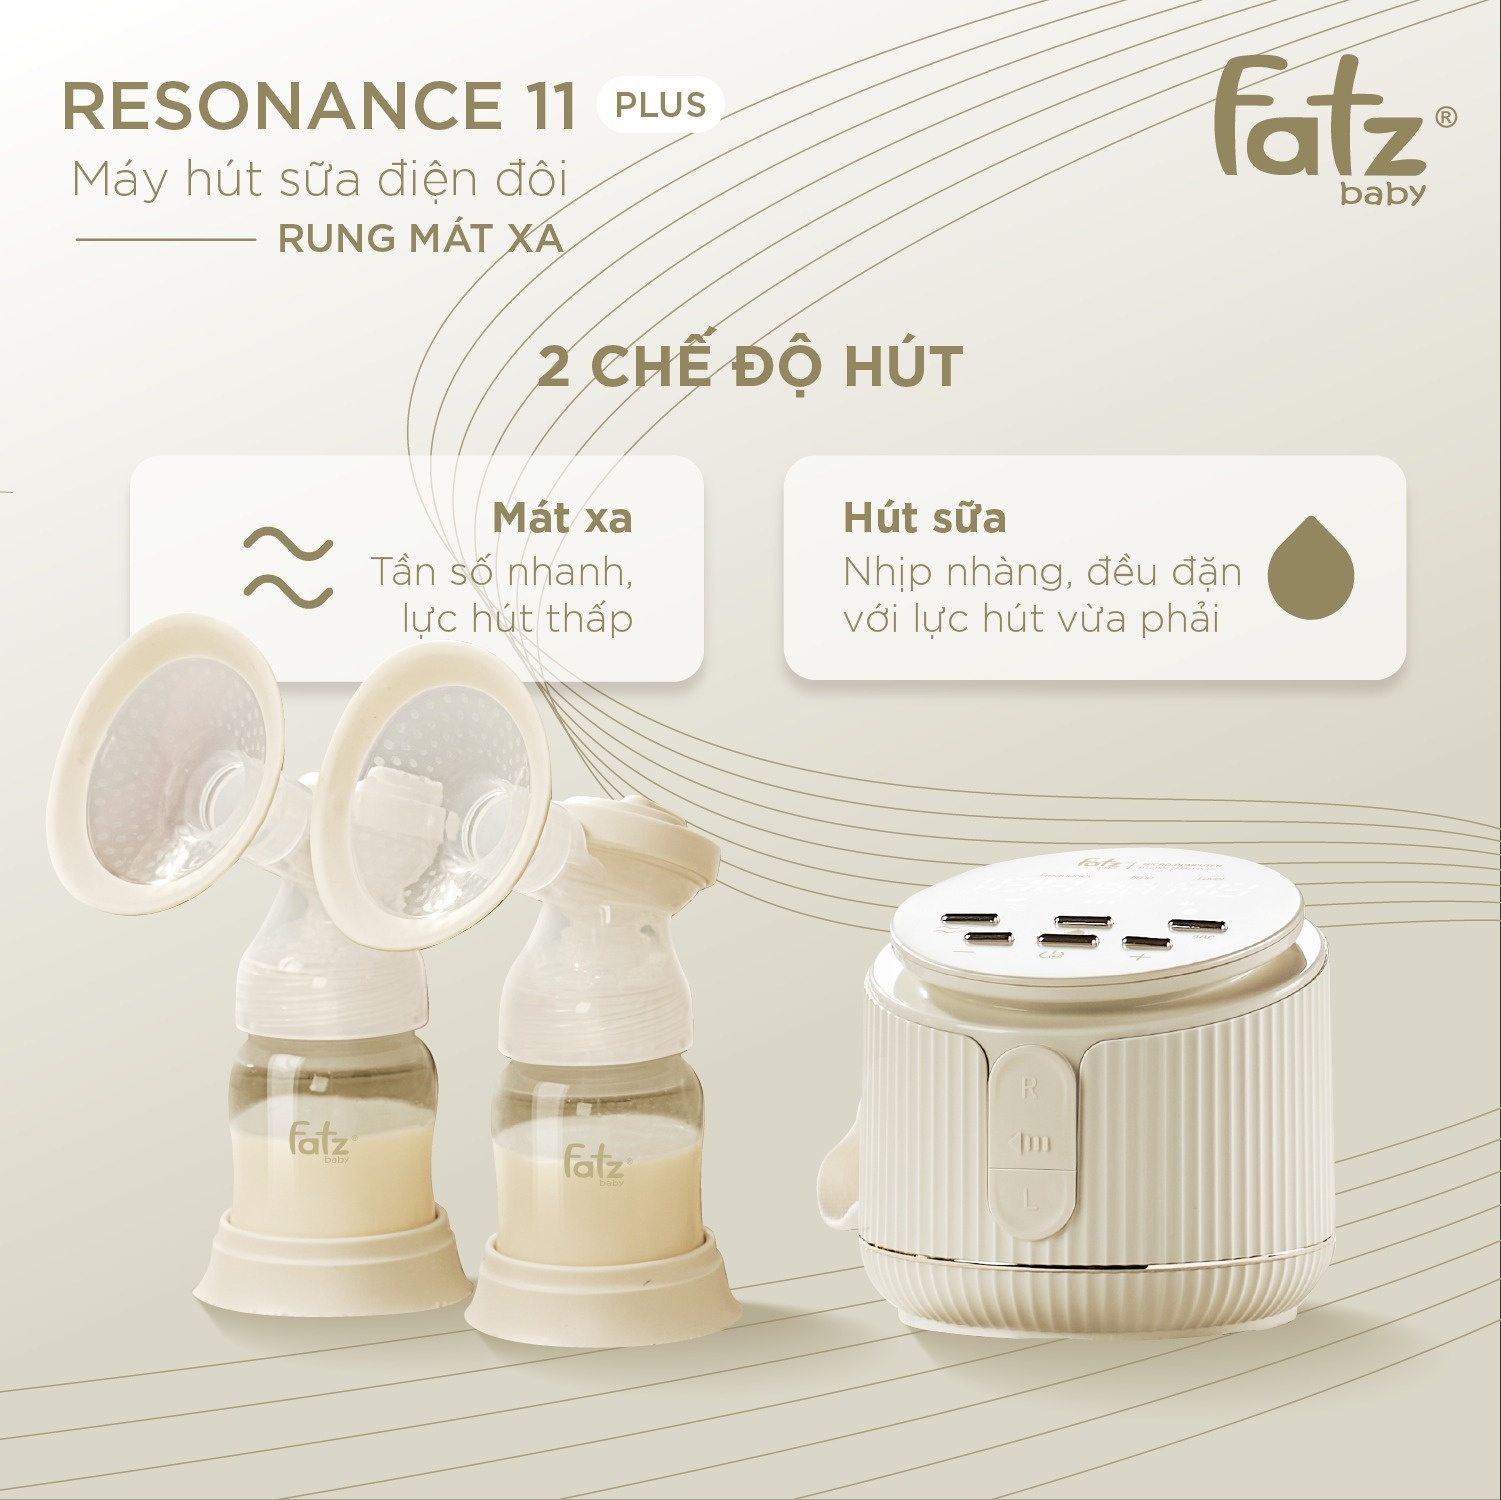 Máy hút sữa điện đôi Resonance 11 Plus FB1230BT